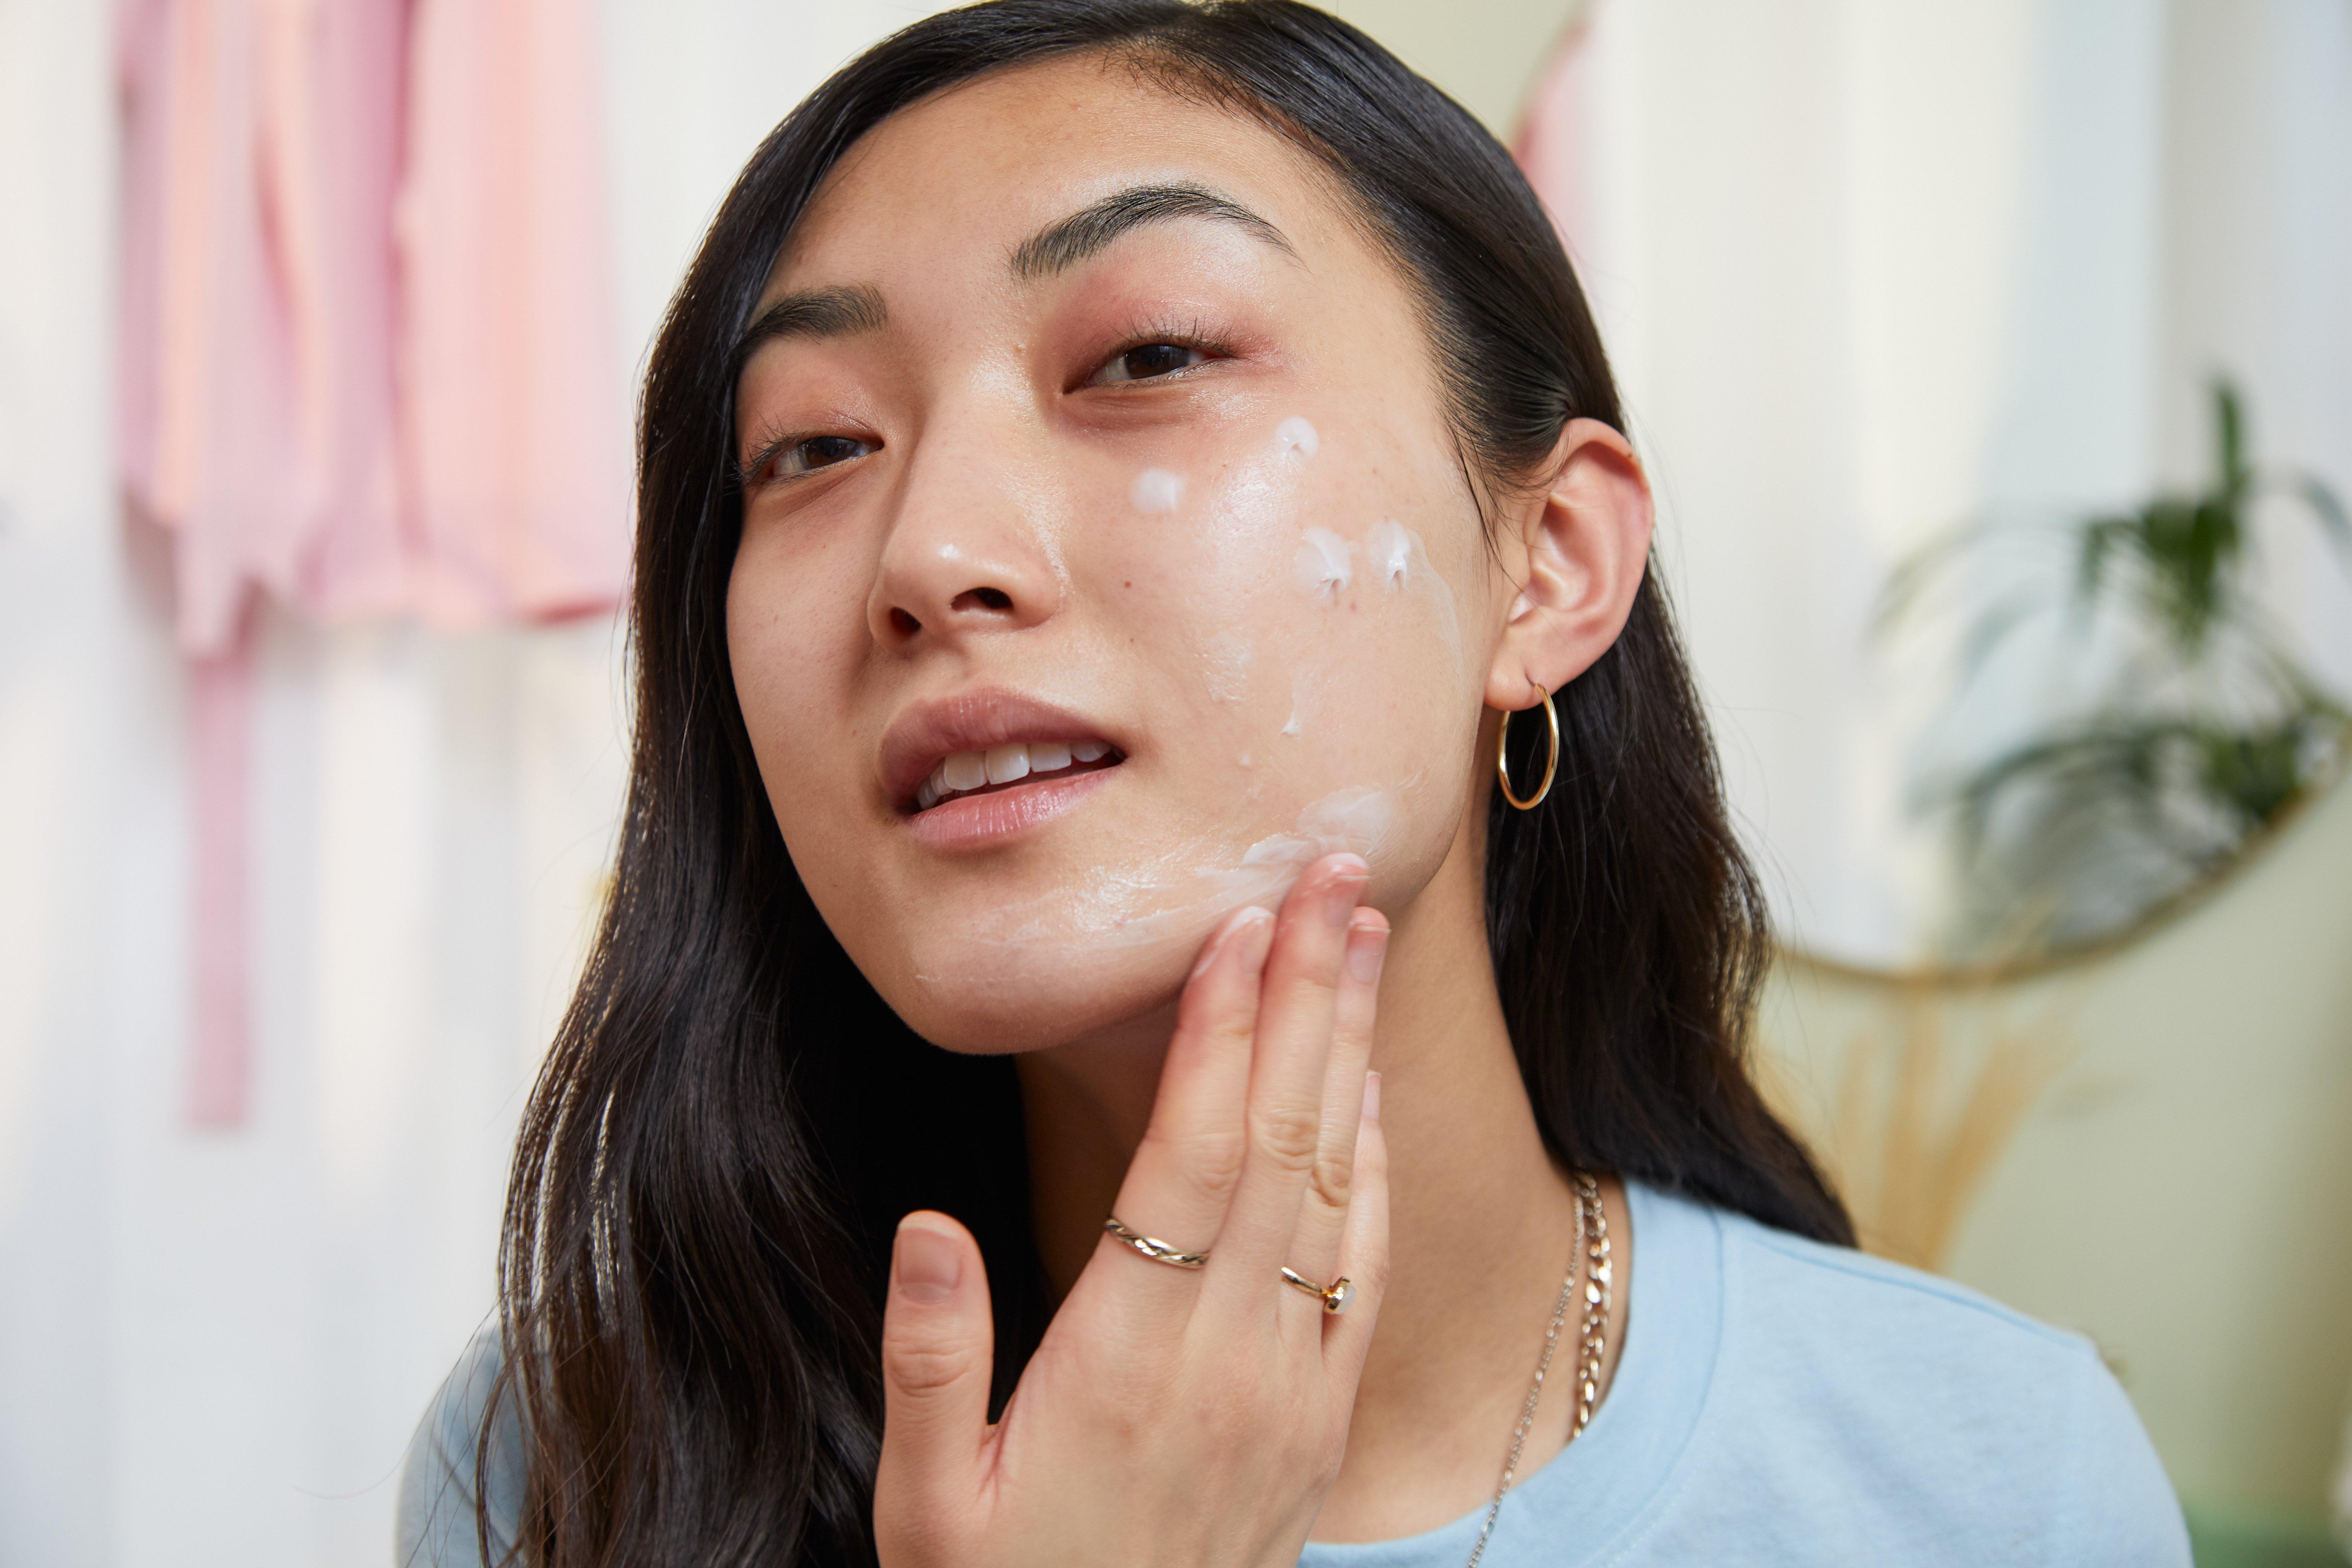 Woman applying face moisturiser